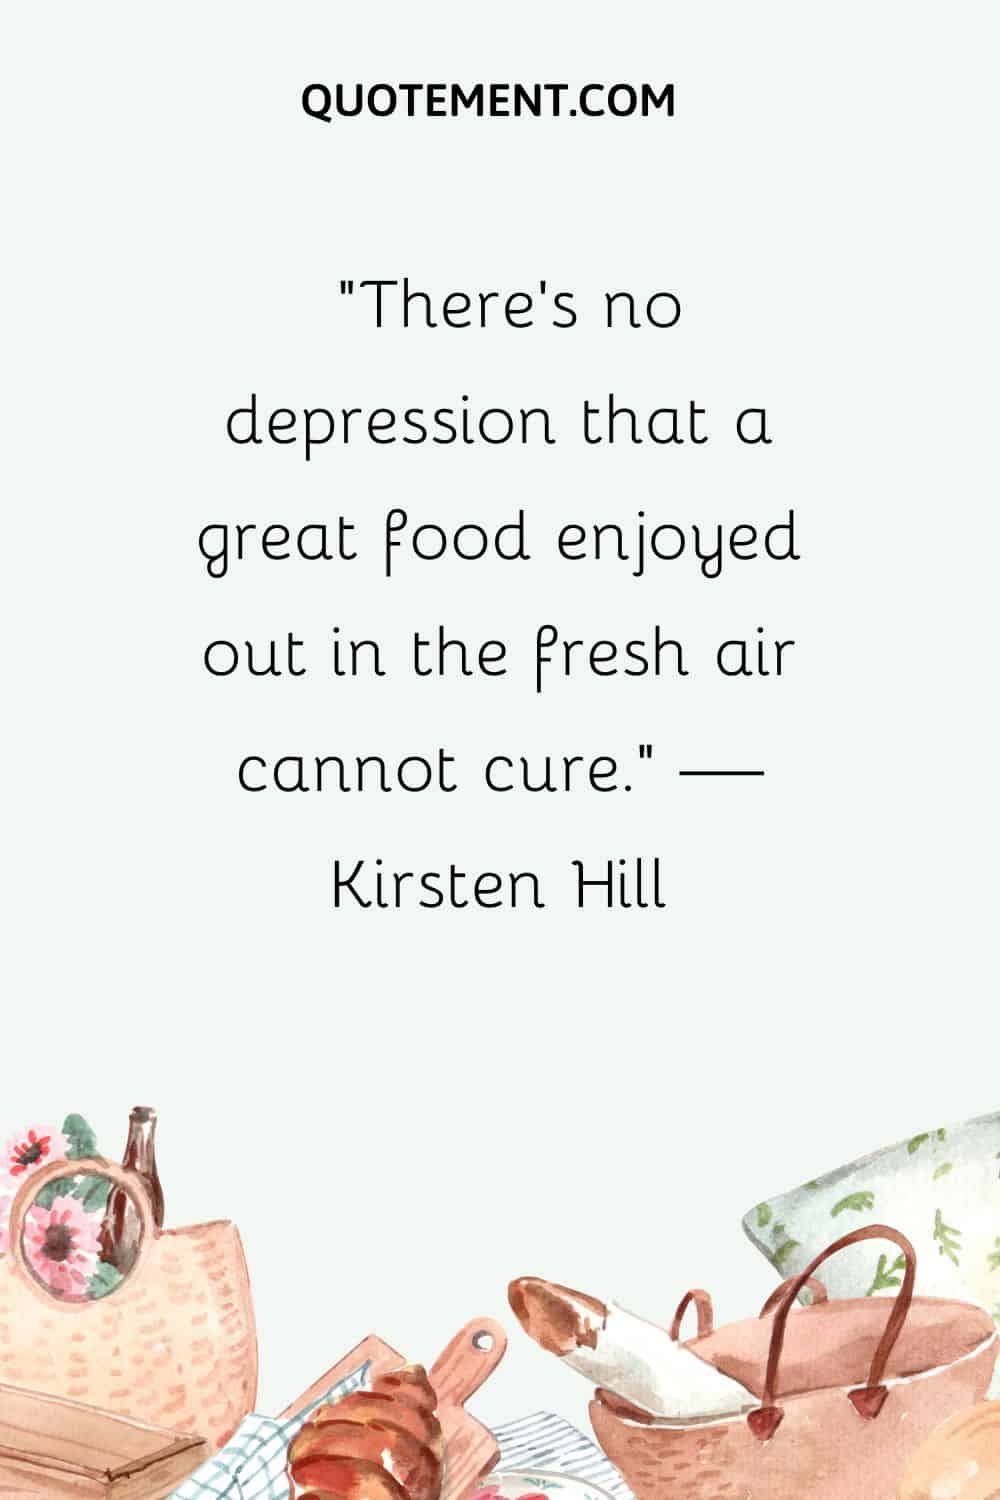 No hay depresión que no pueda curar una buena comida al aire libre.